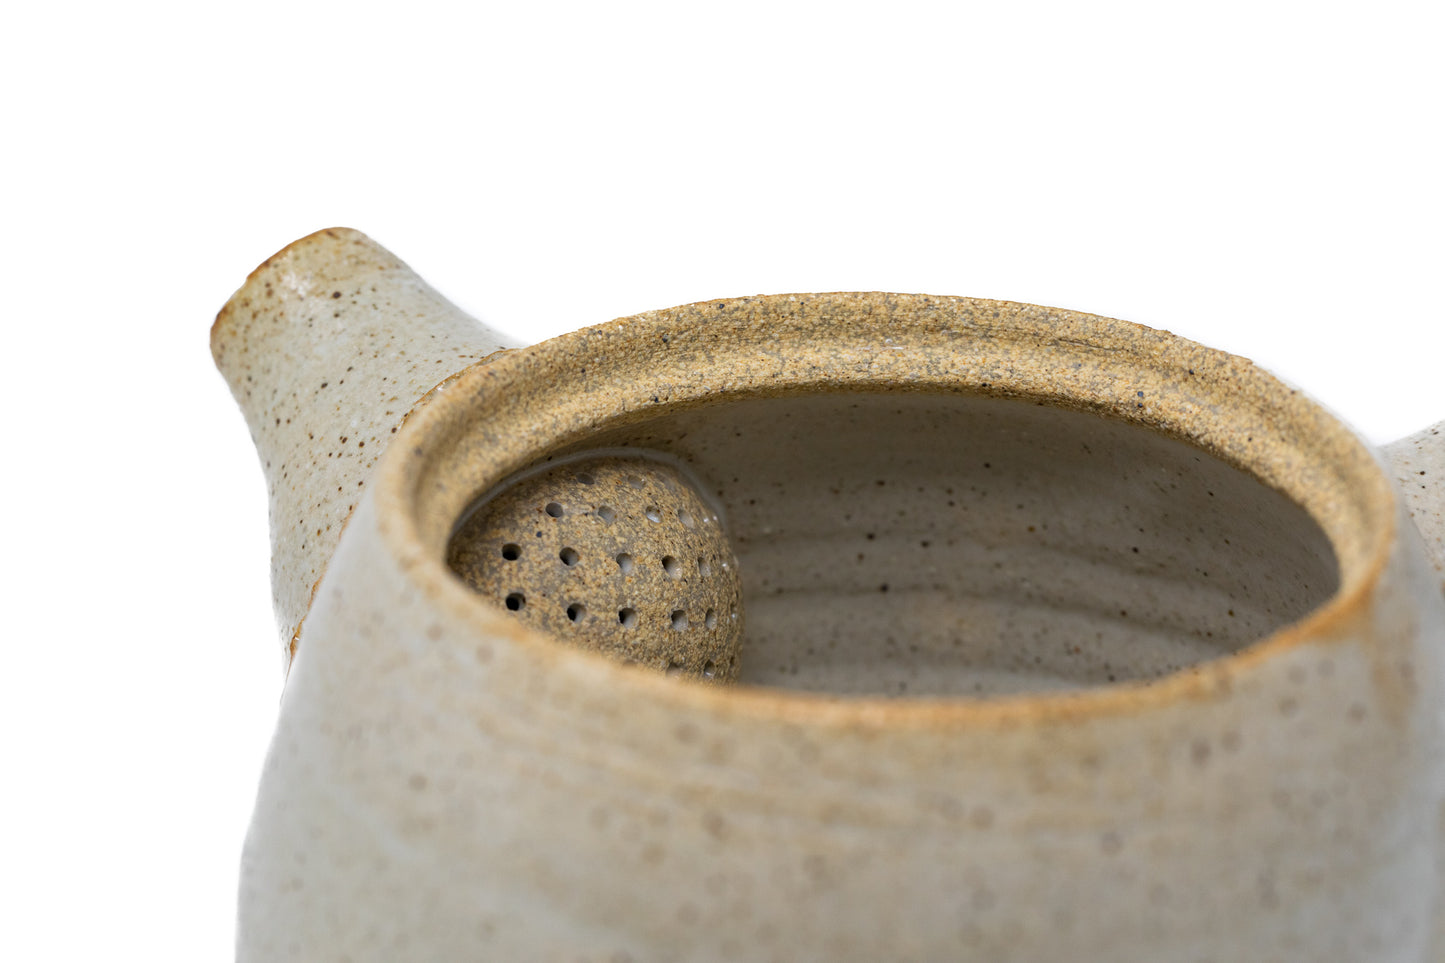 
                  
                    Handmade Tea Pot
                  
                